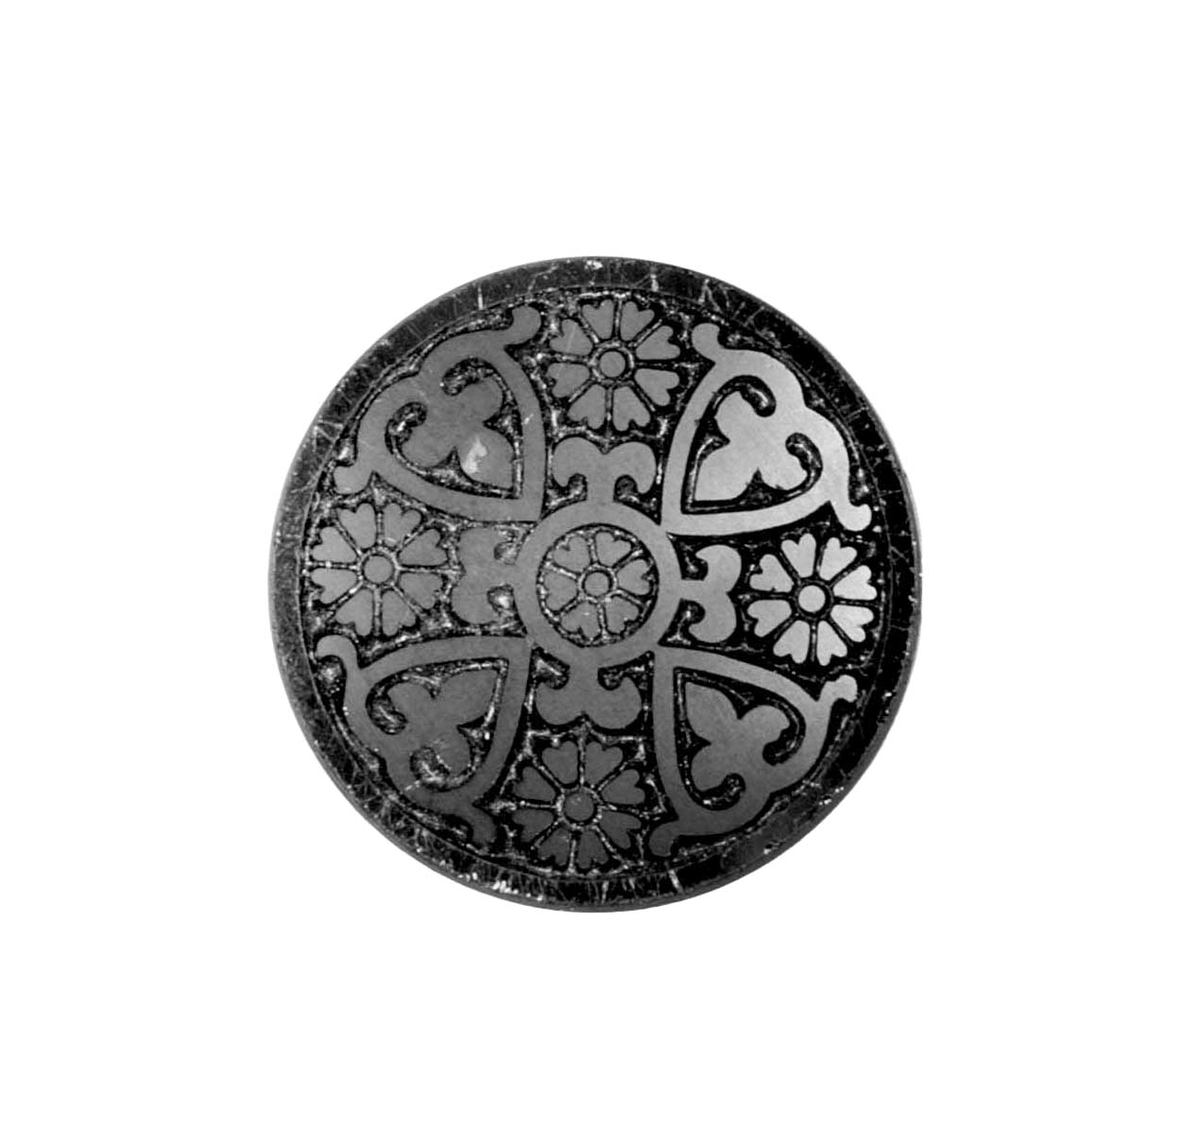 8 runda knappar av ebonit (plast). Framsidan, klädd i svart virkat mönster och svarta glaspärlor. Undersidan platt.